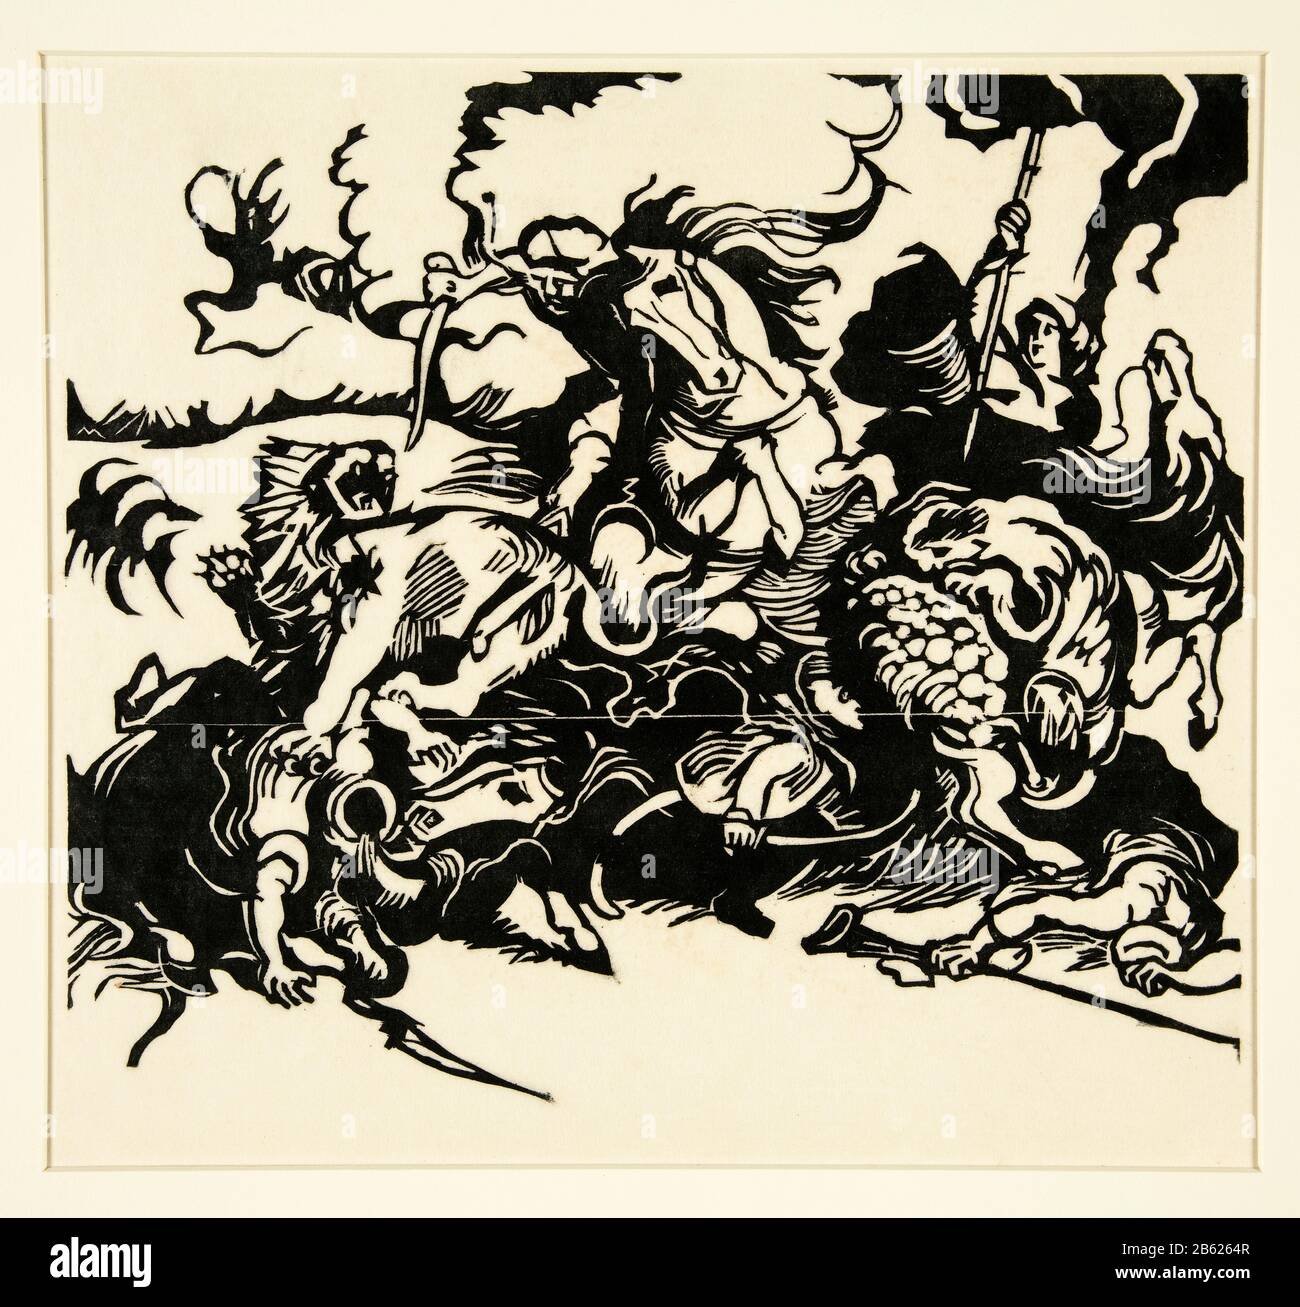 Caccia al Leone dopo Delacroix, stampa in legno di Franz Marc, 1913 Foto Stock